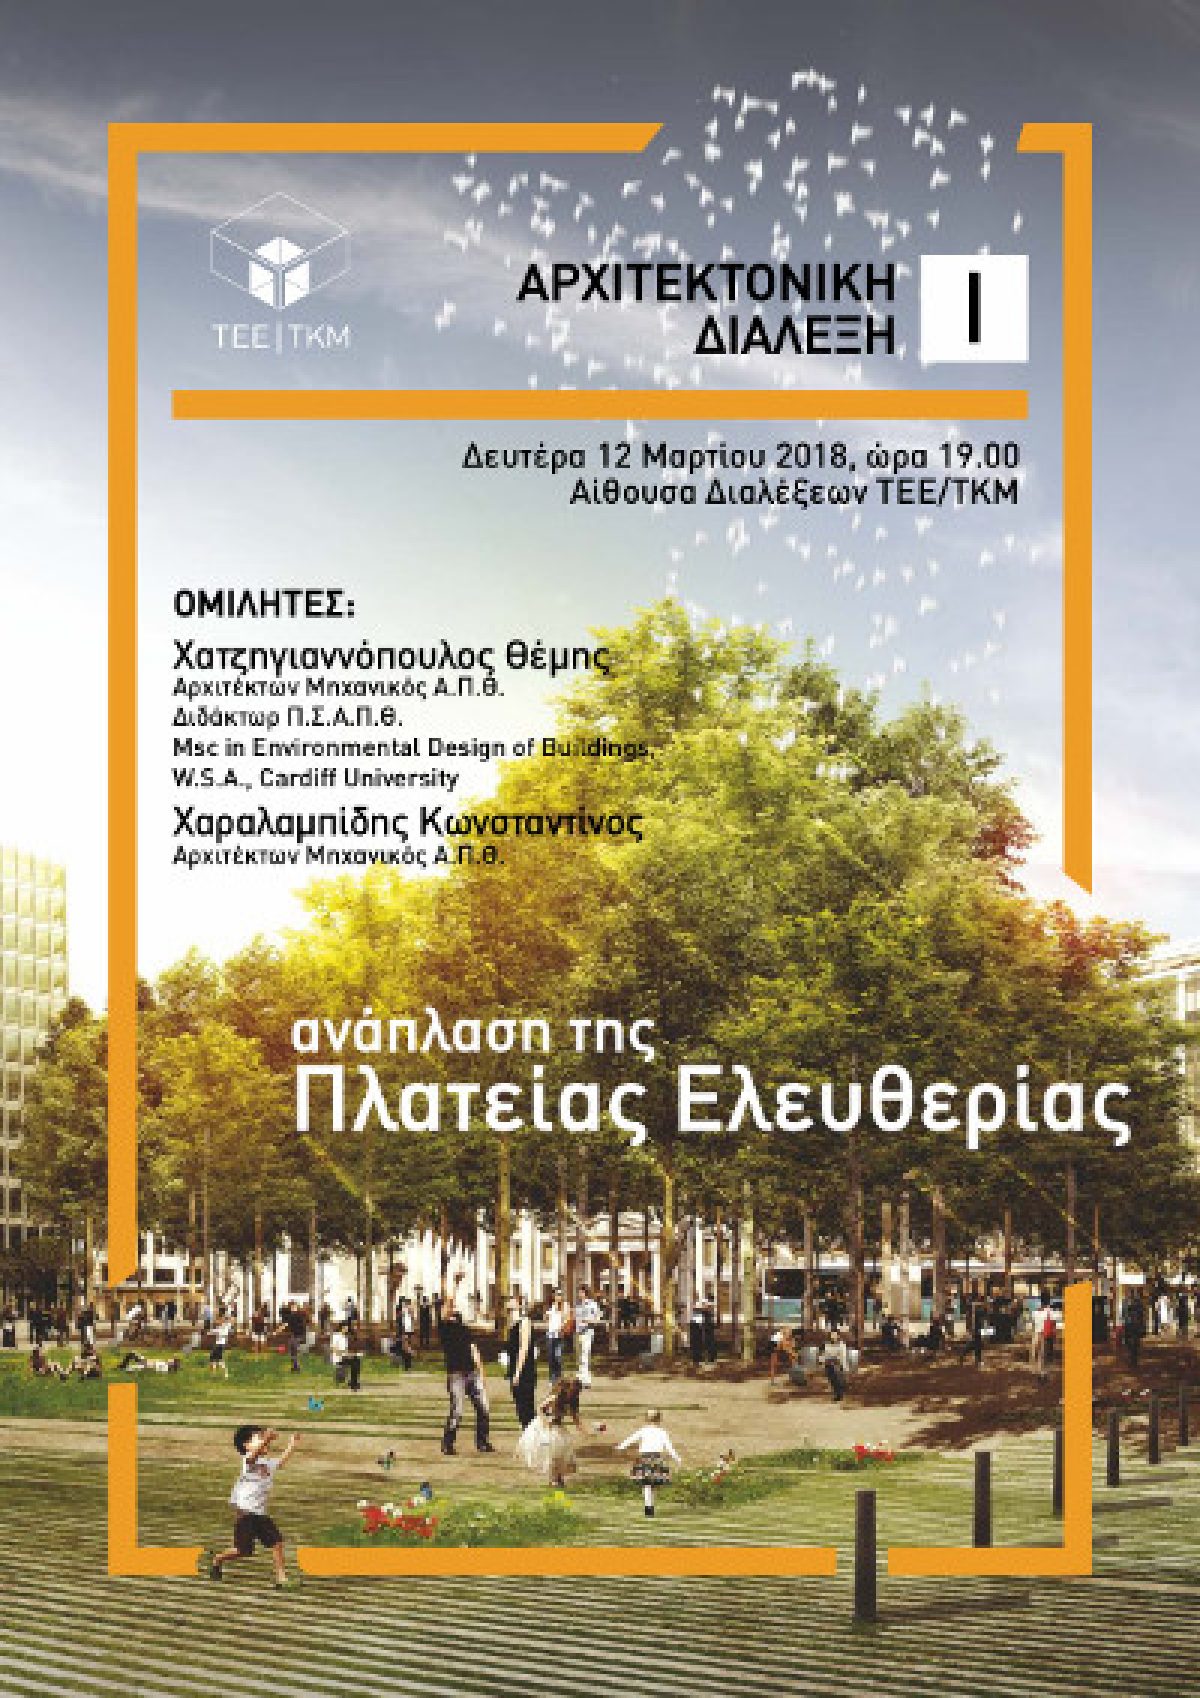 Διάλεξη με θέμα “Ανάπλαση Πλατείας Ελευθερίας” στο ΤΕΕ / ΤΚΜ στη Θεσσαλονίκη